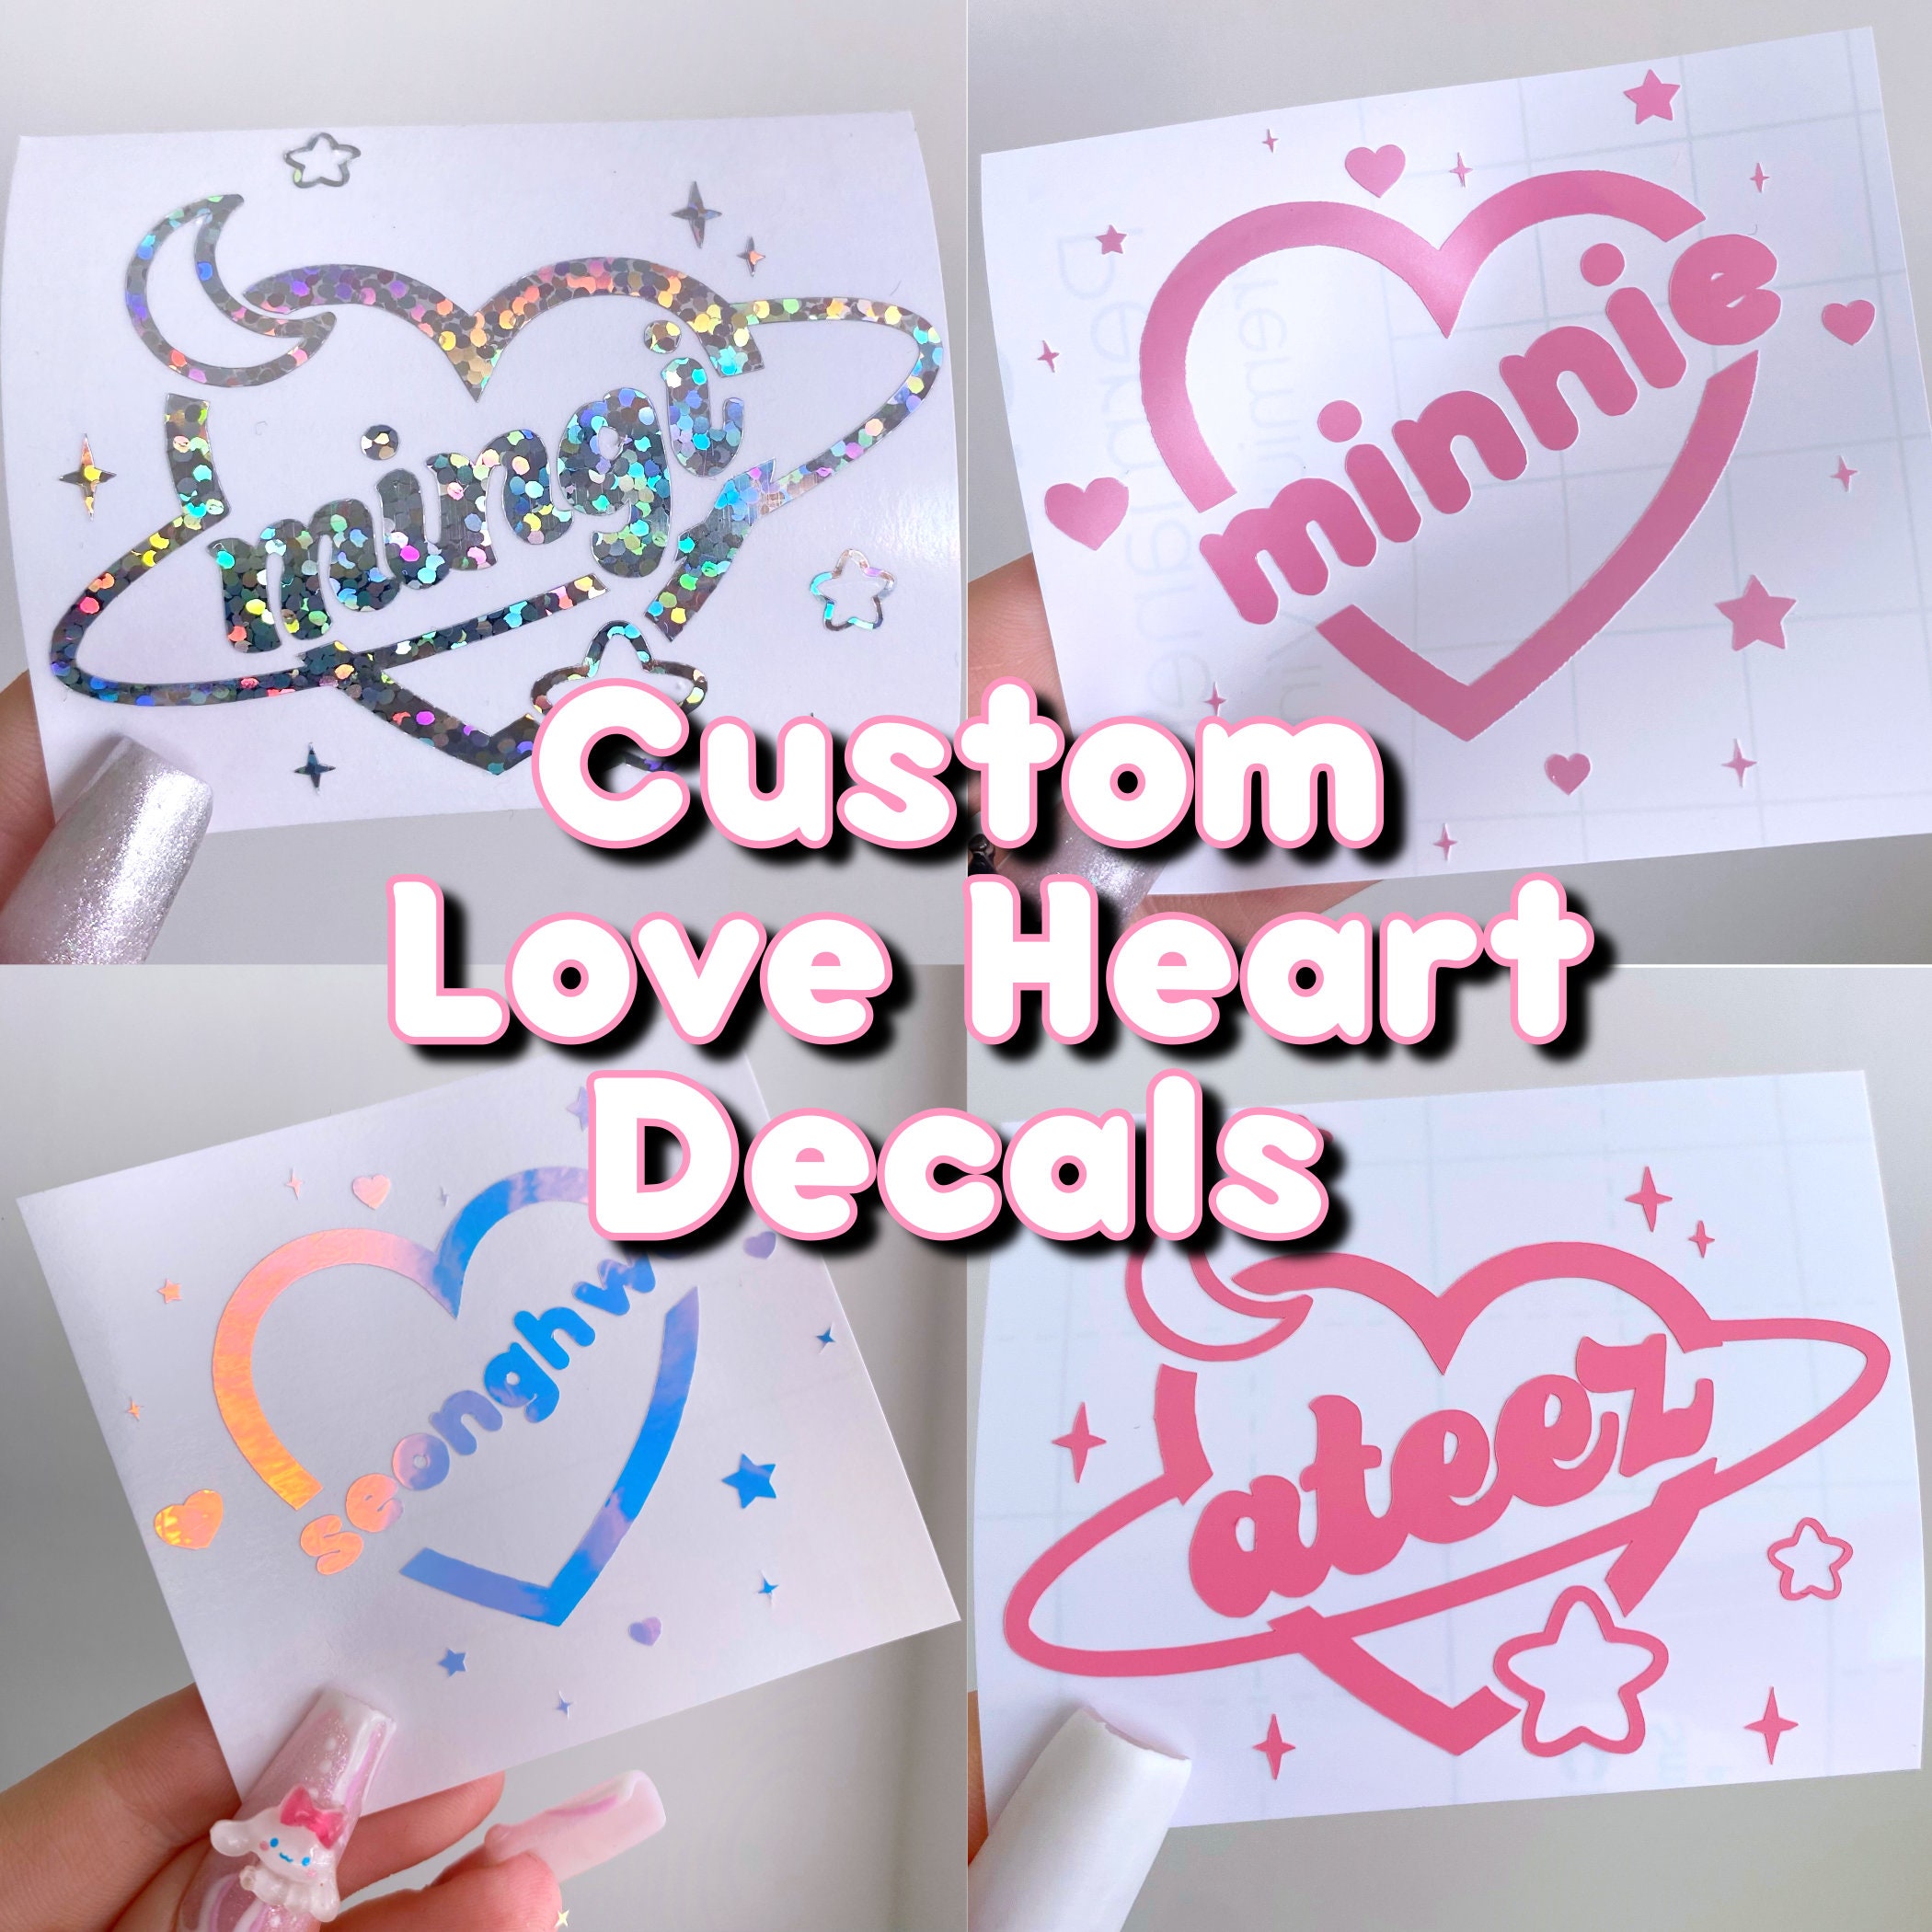 RIIZE KPOP Heart Sticker Pack 10pcs Cute Kawaii Stickers for